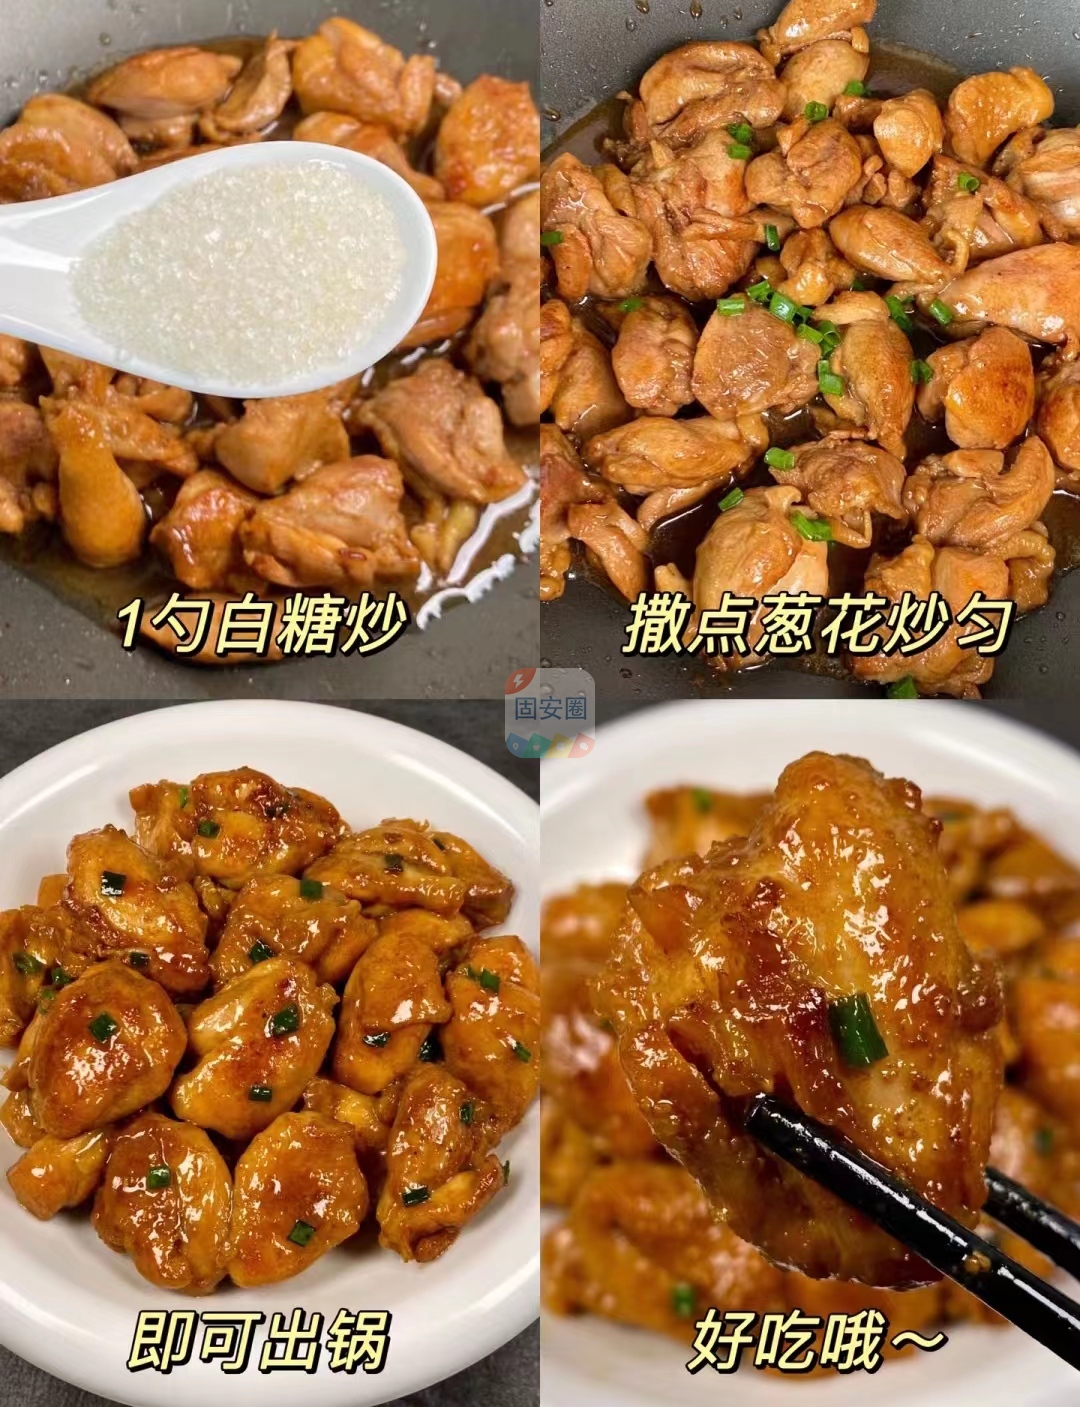 浓郁的葱油焖鸡这样做也太好吃了，嘎嘎的香3057 作者:中国大厨 帖子ID:205320 